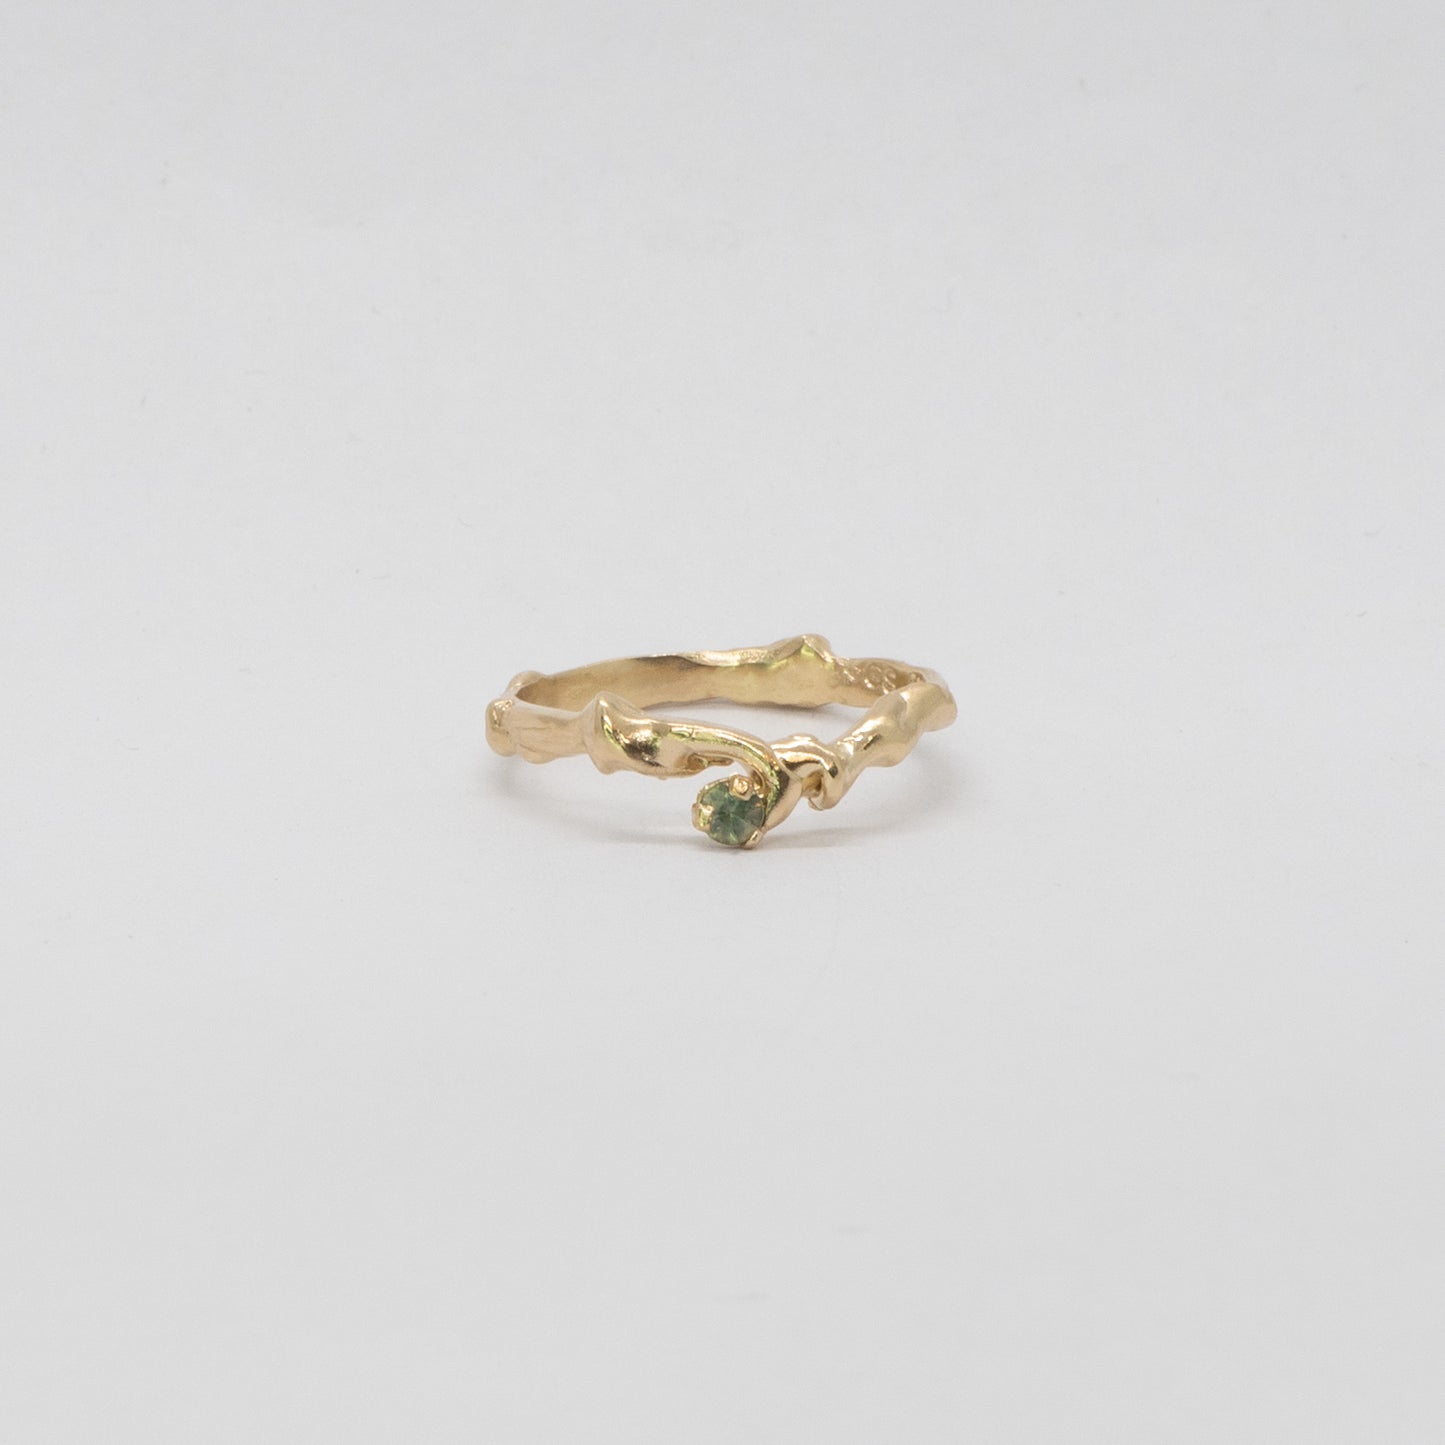 Bespoke Enchanted Ivy Ring